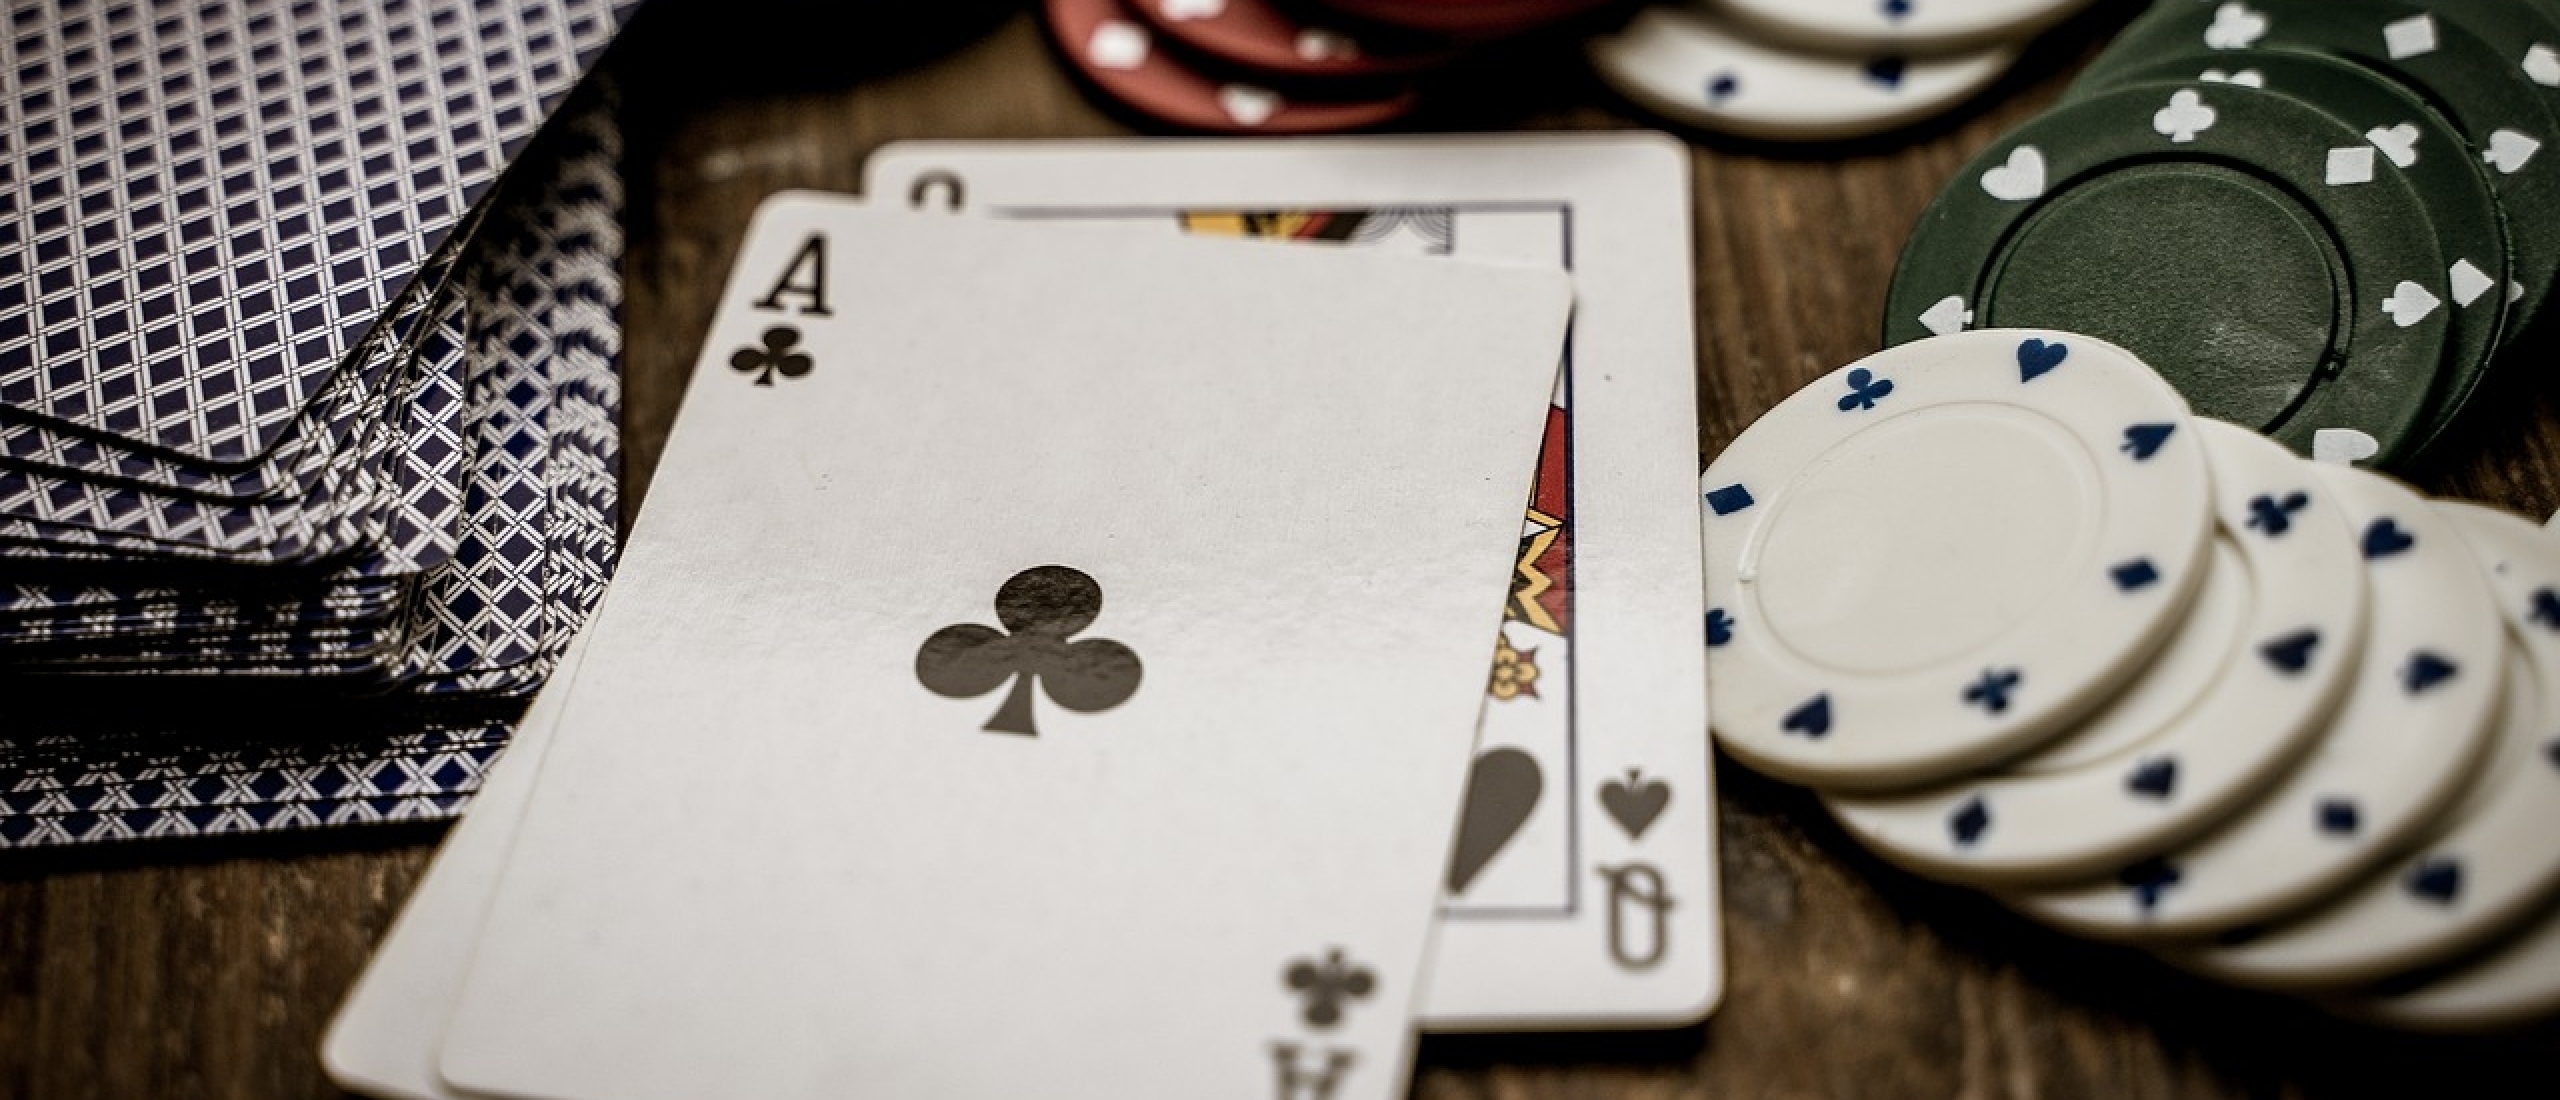 De impact van de regulering op de online casino-industrie in Nederland